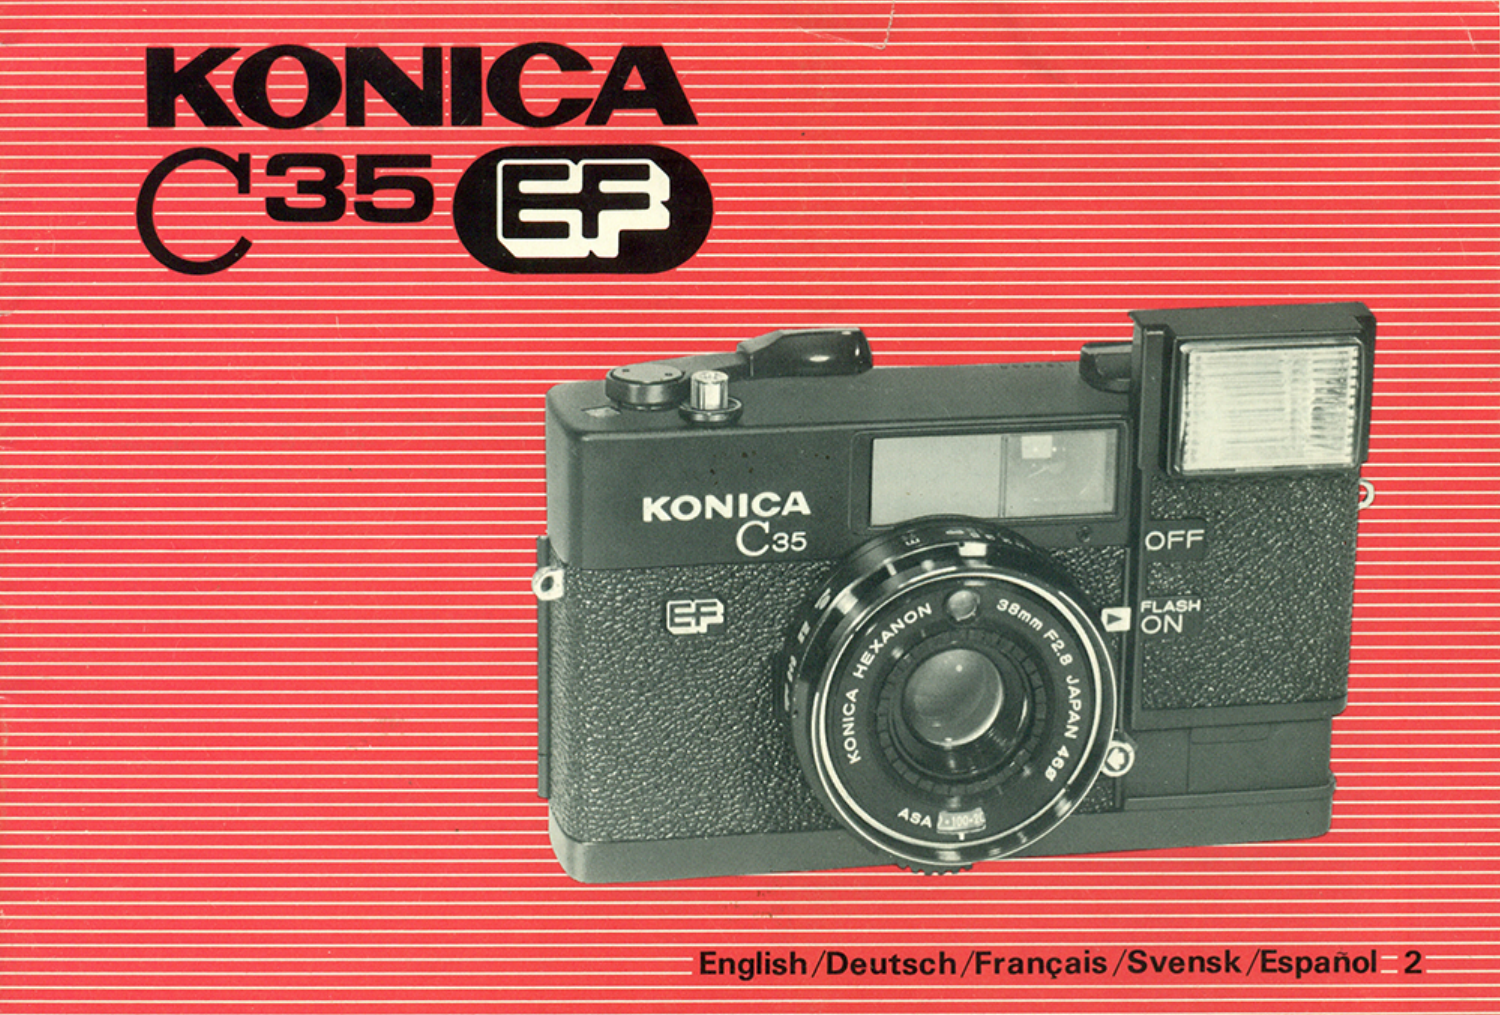 気質アップ 完動品(^^)/ konica c35 ef - カメラ